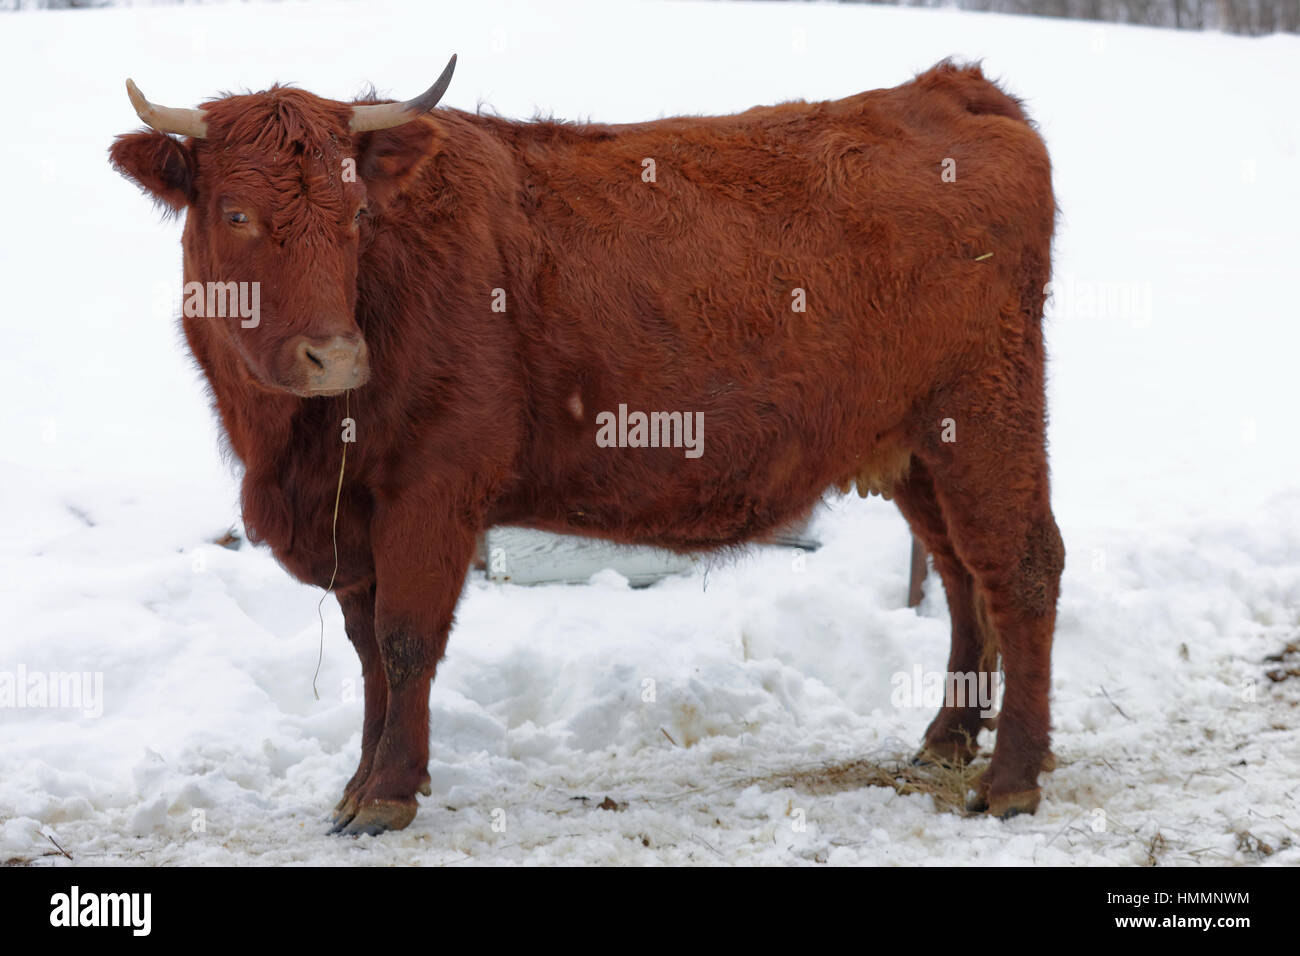 Livestock farming in winter Stock Photo